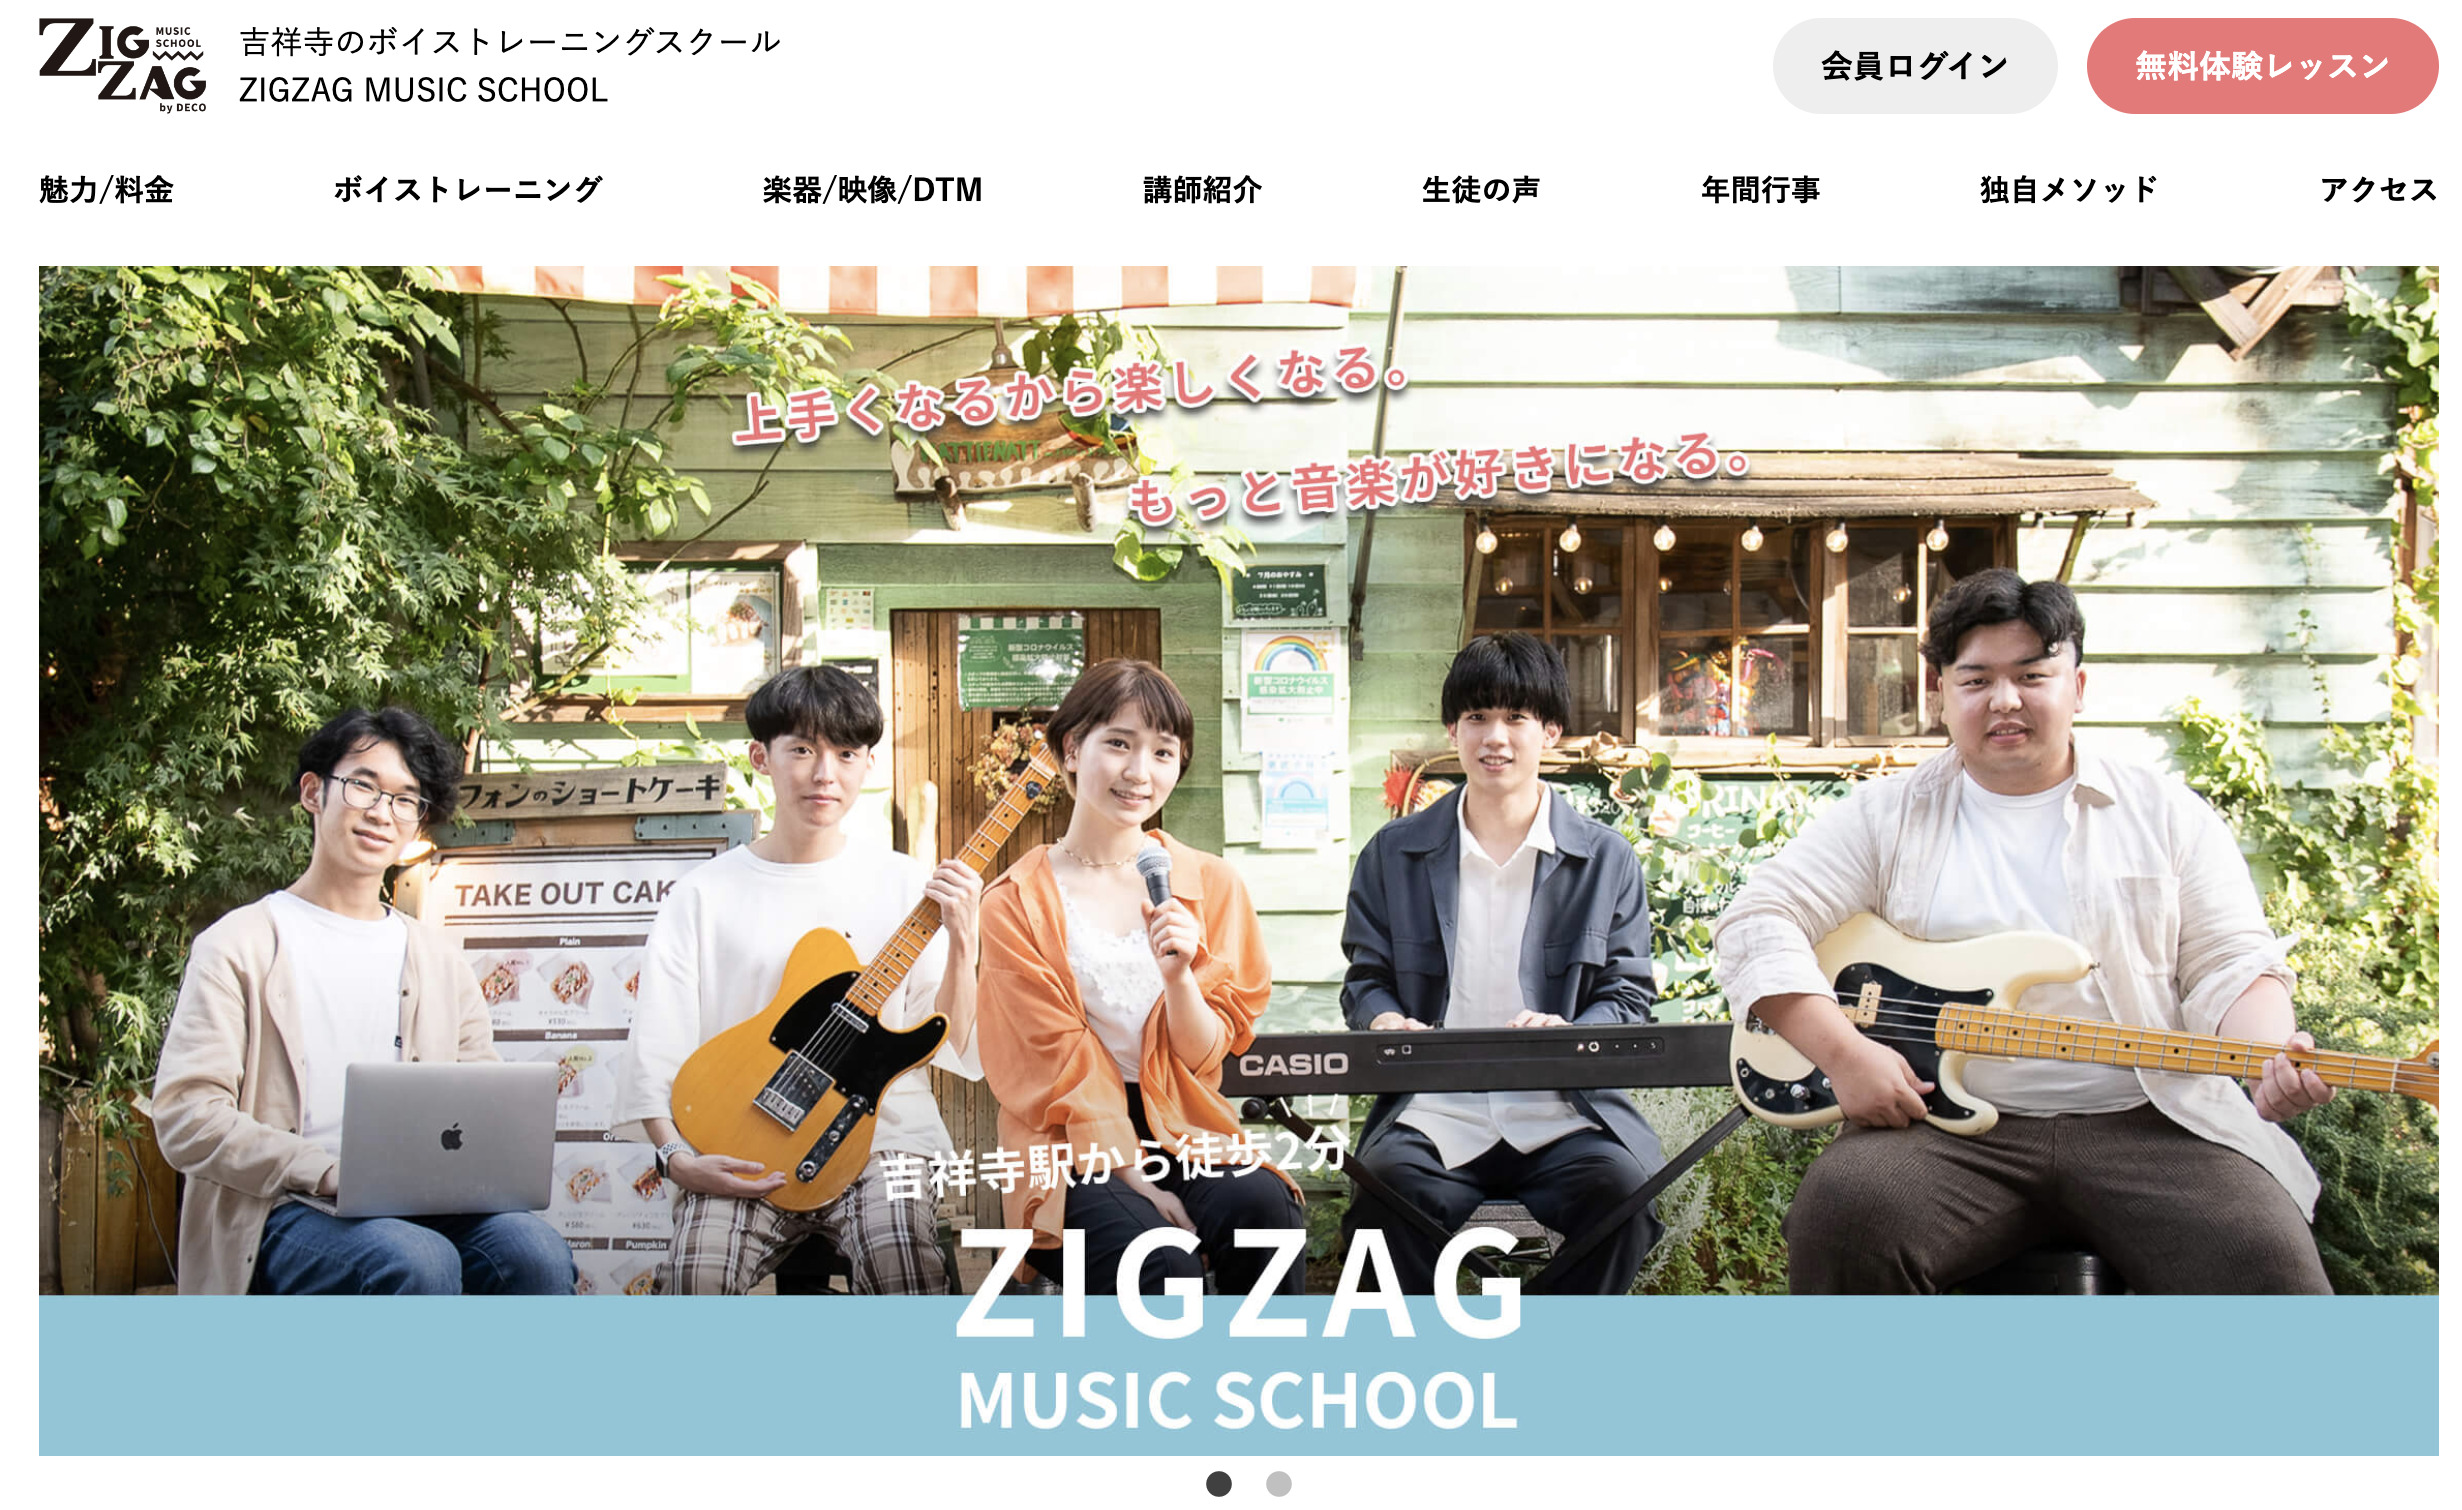 吉祥寺のボイトレ教室 ZIGZAG MUSIC SCHOOL